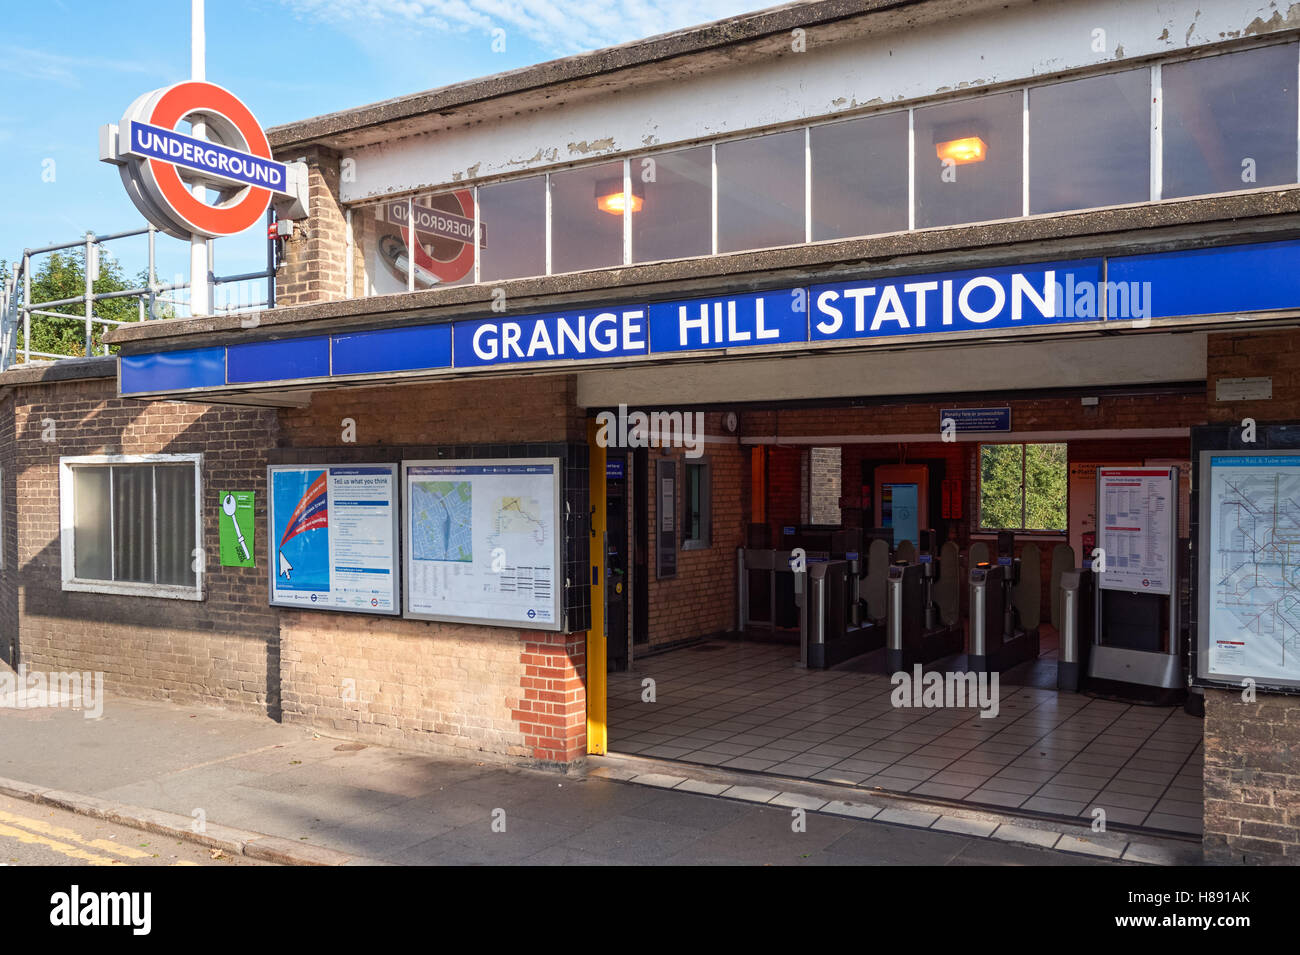 Entrée de la station de métro Grange Hill, Londres Angleterre Royaume-Uni UK Banque D'Images